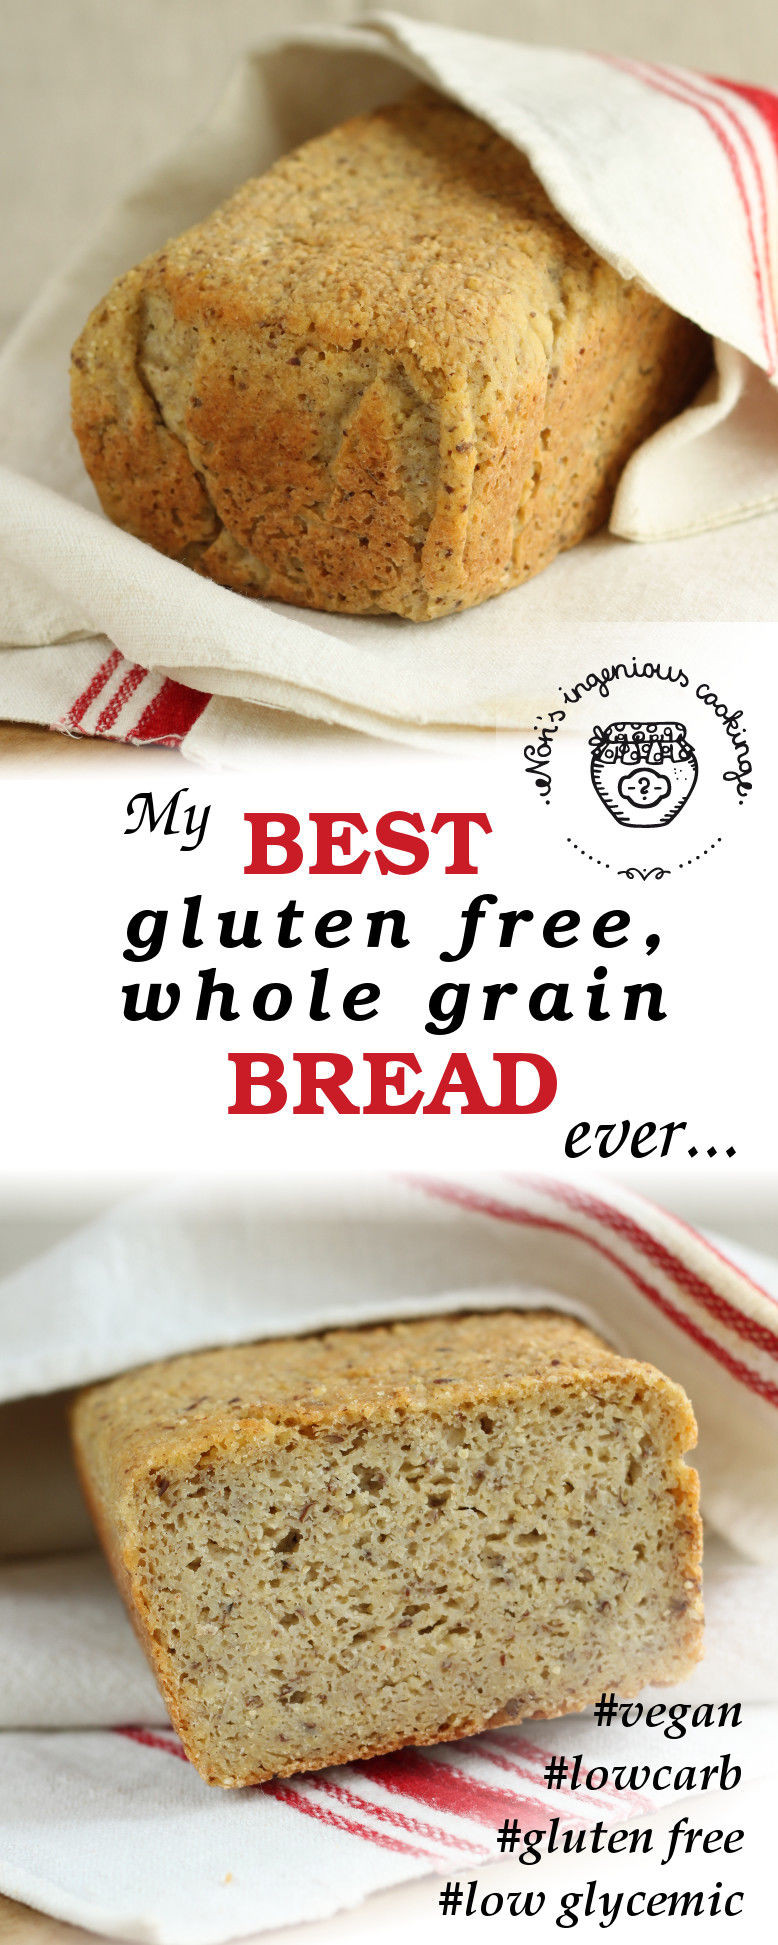 Egg Free Grain Free Bread
 My best gluten free whole grain bread ever vegan